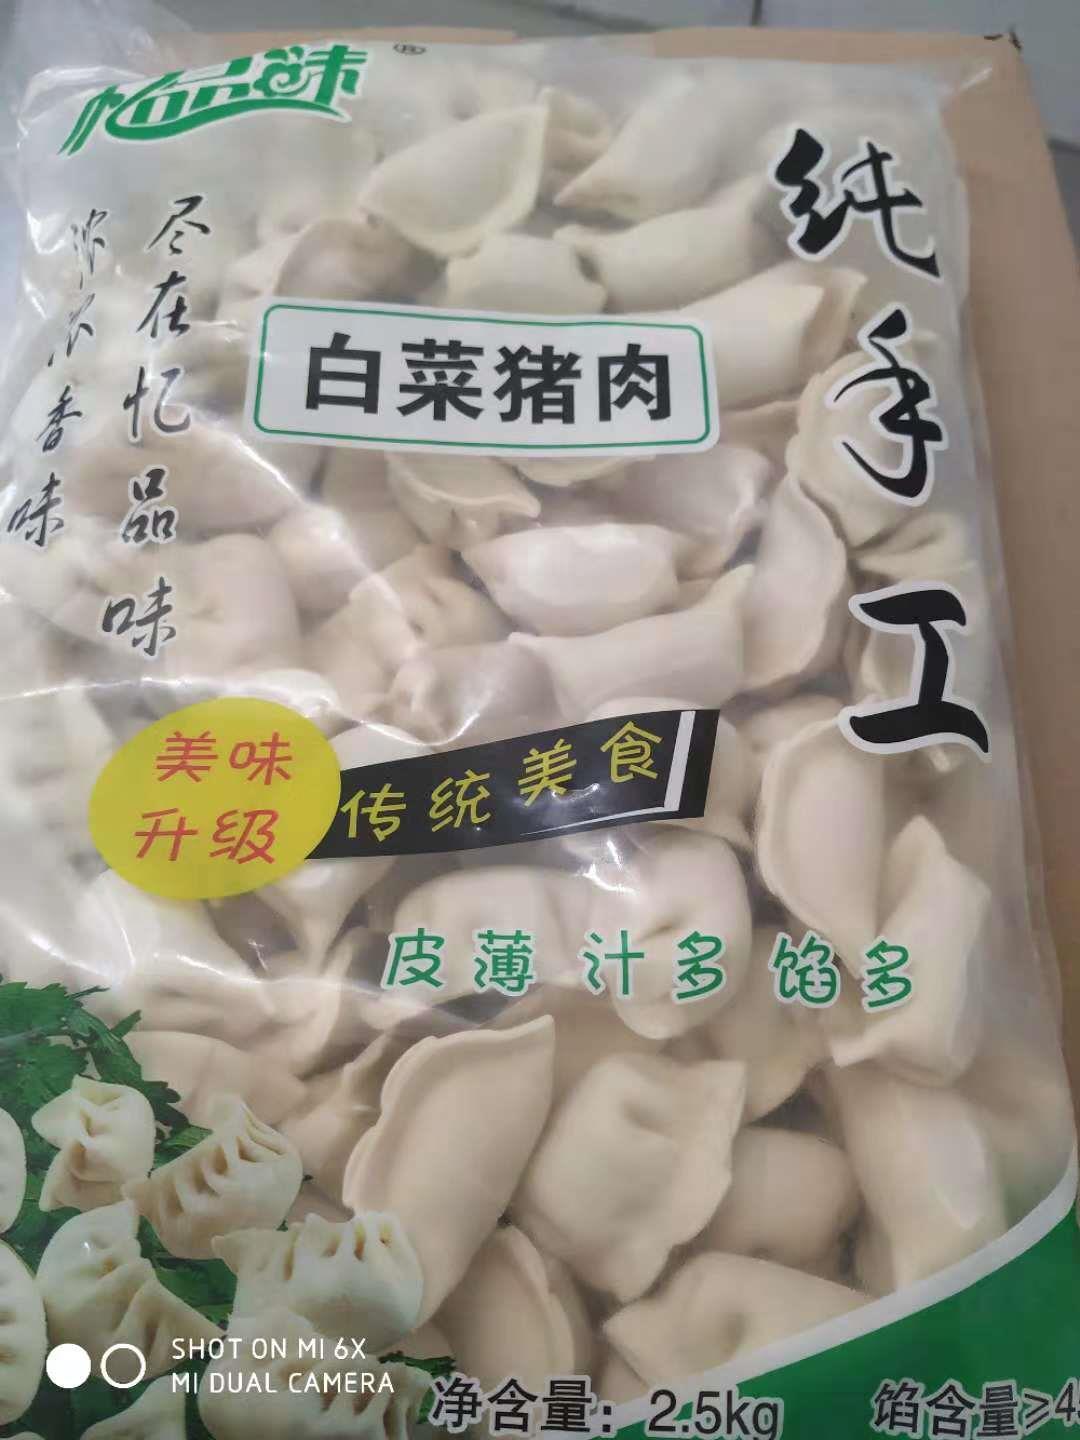 湖北忆品味水饺供应商 泗阳县忆品味食品有限公司